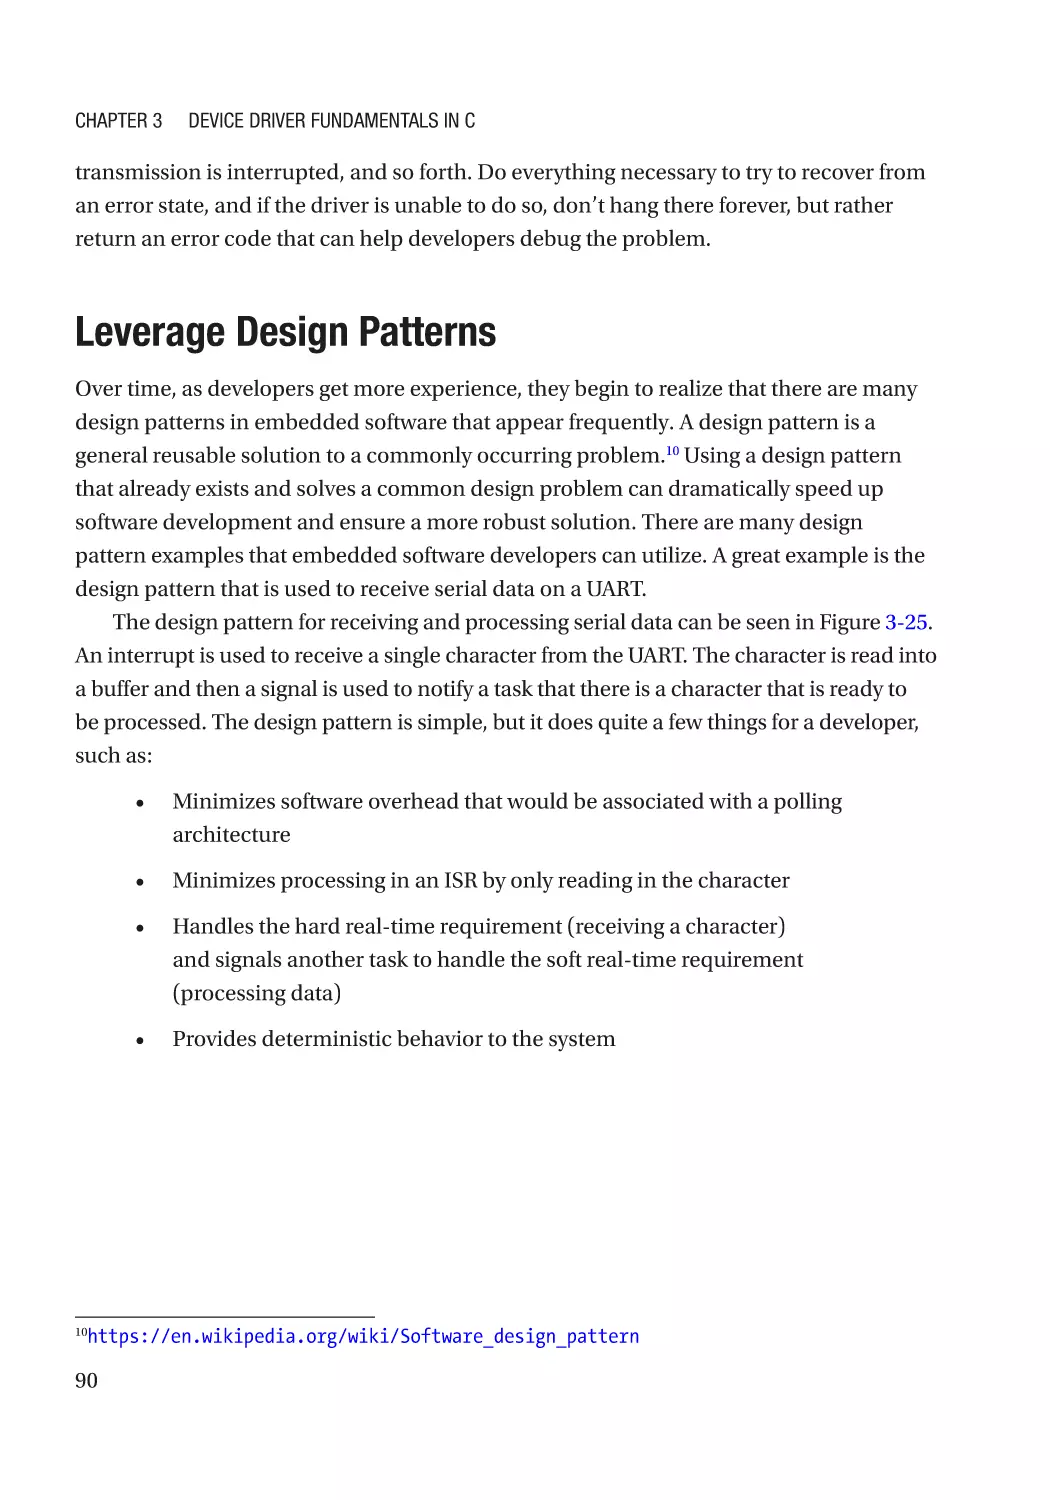 Leverage Design Patterns